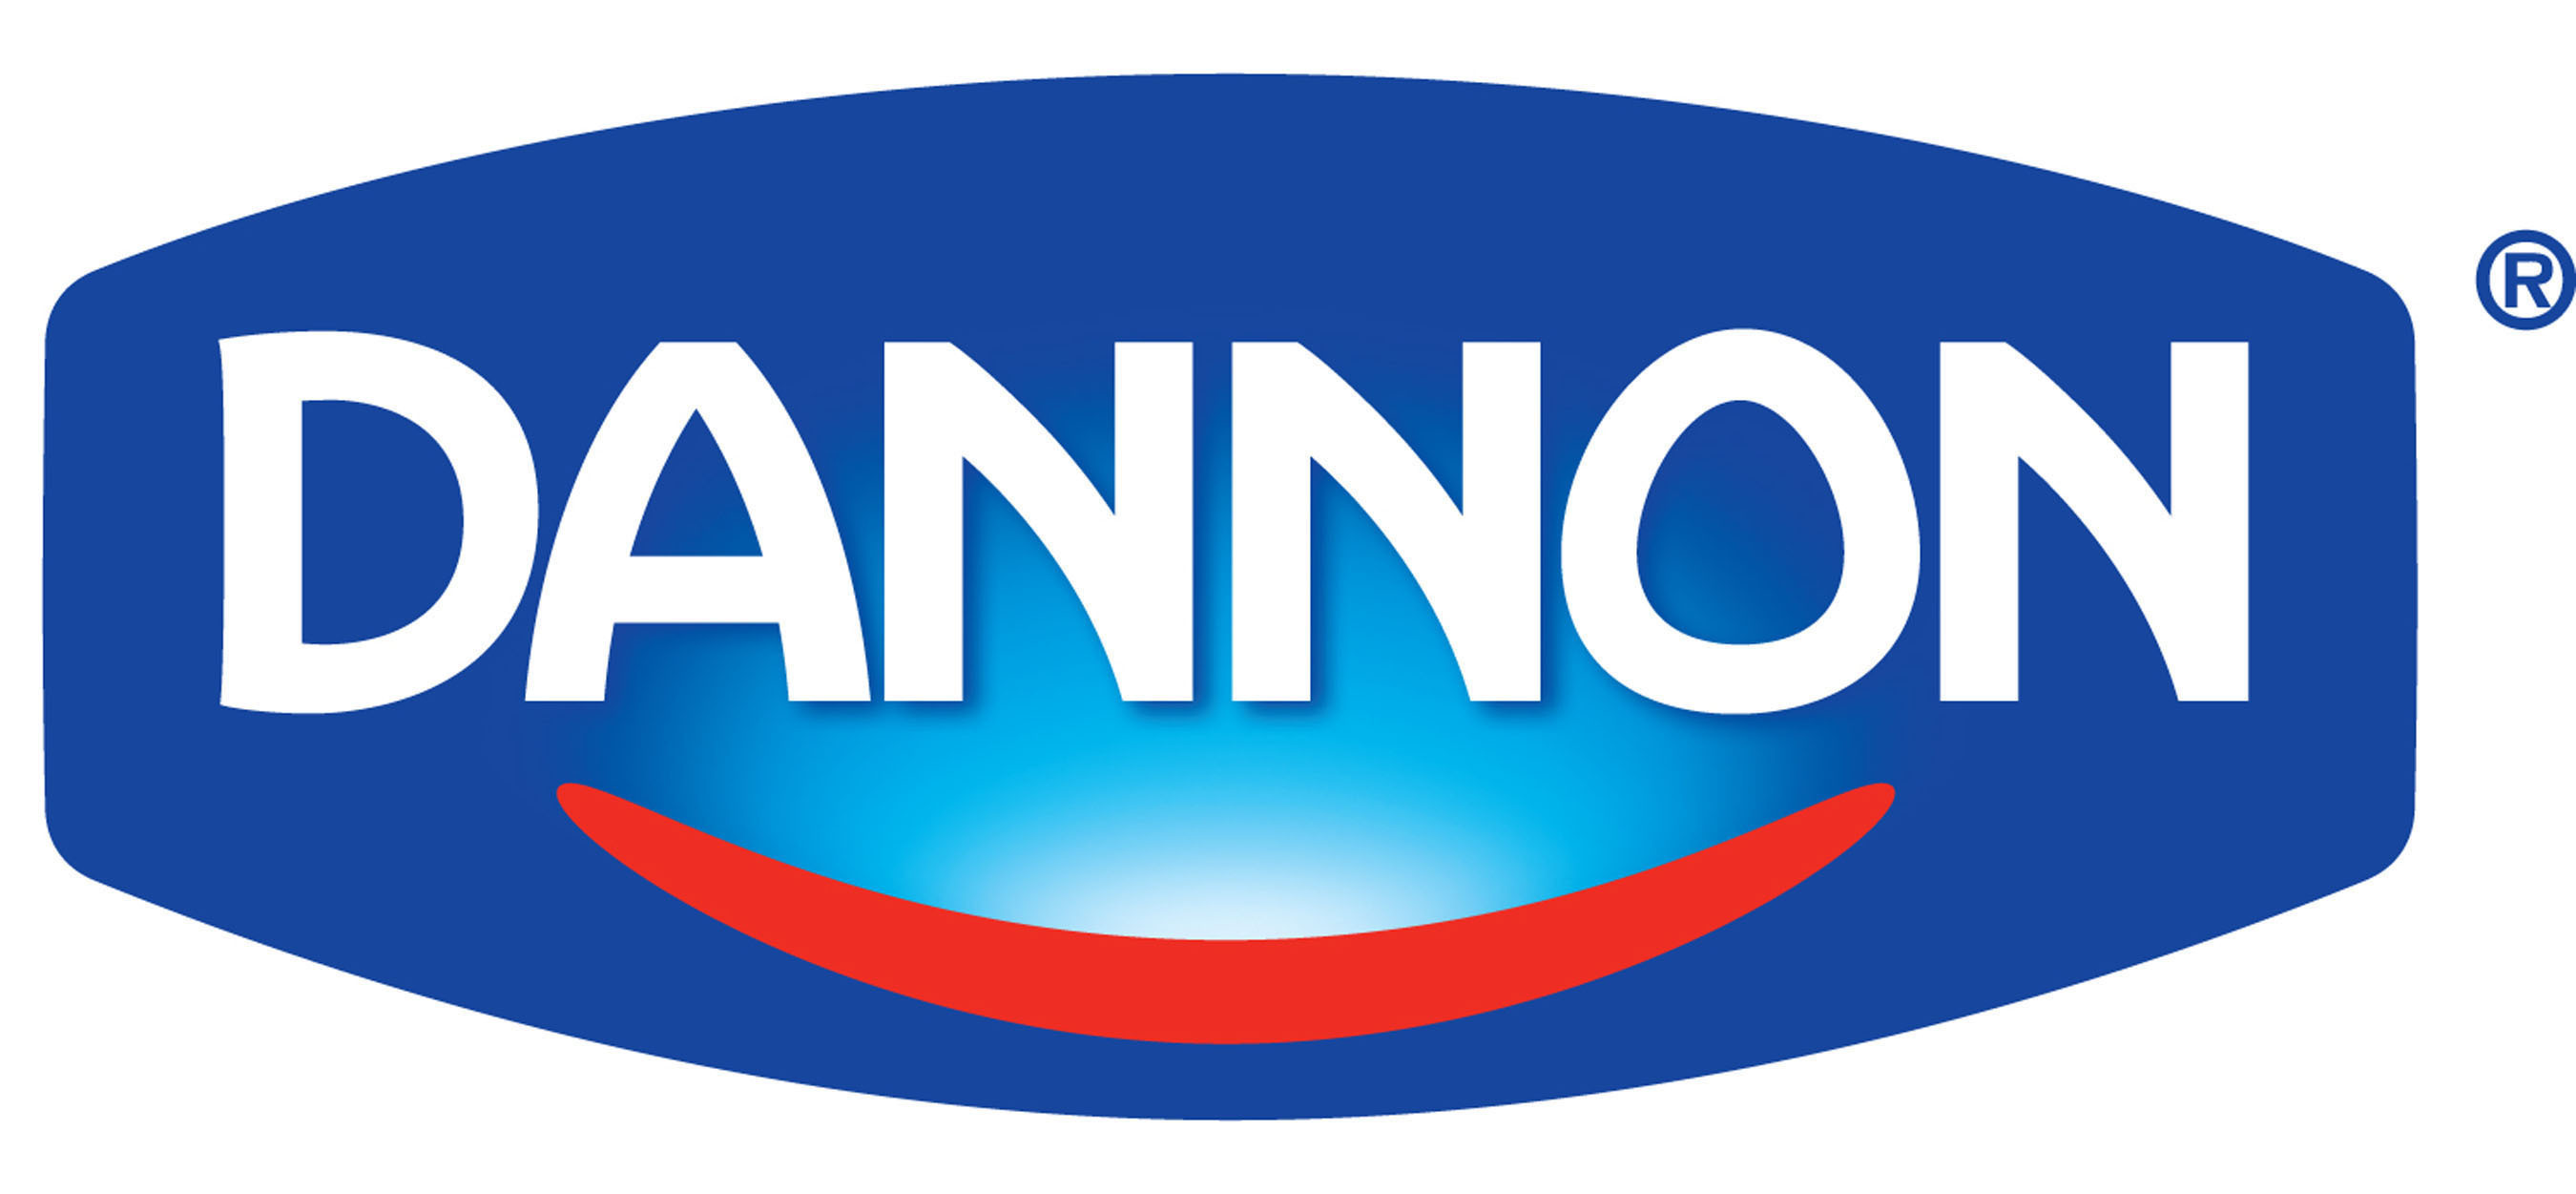 Dannon logo. (PRNewsFoto/The Dannon Company) (PRNewsFoto/THE DANNON COMPANY)